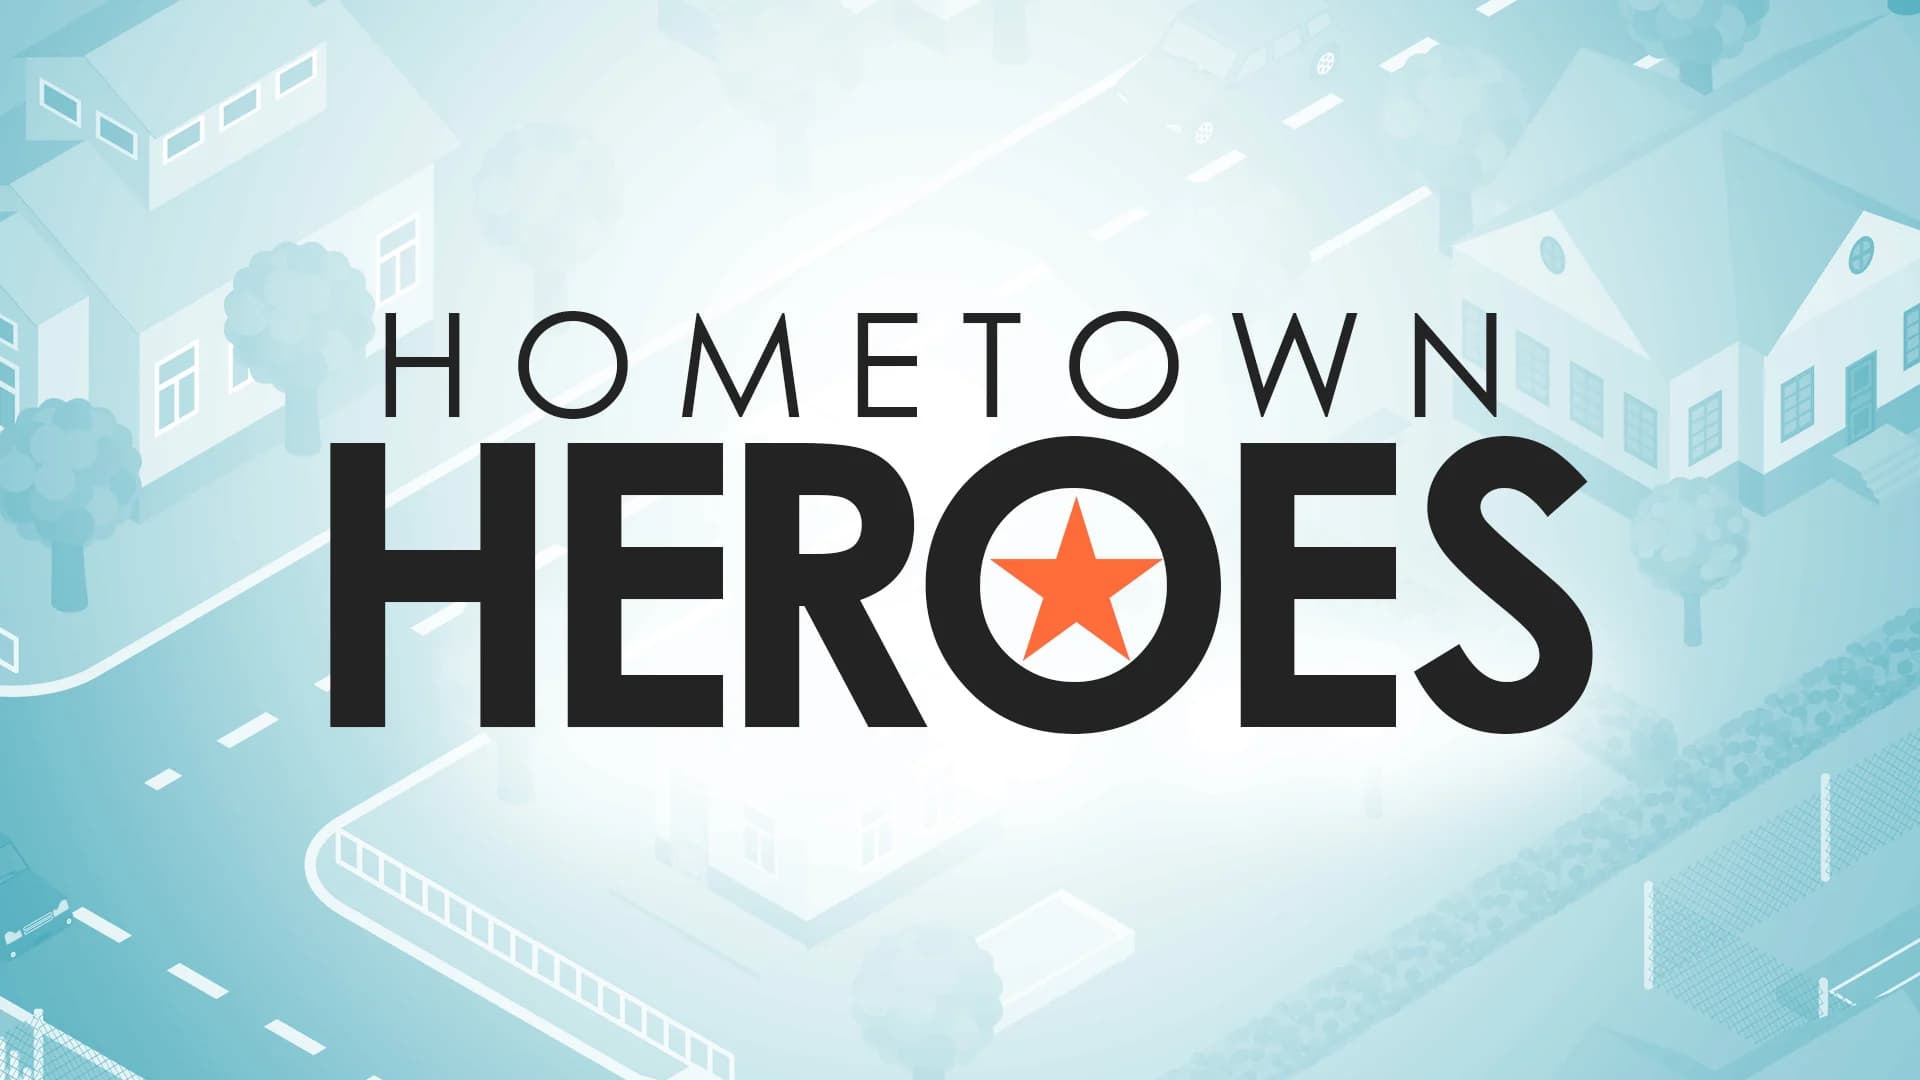 Hometown Heroes in New Jersey